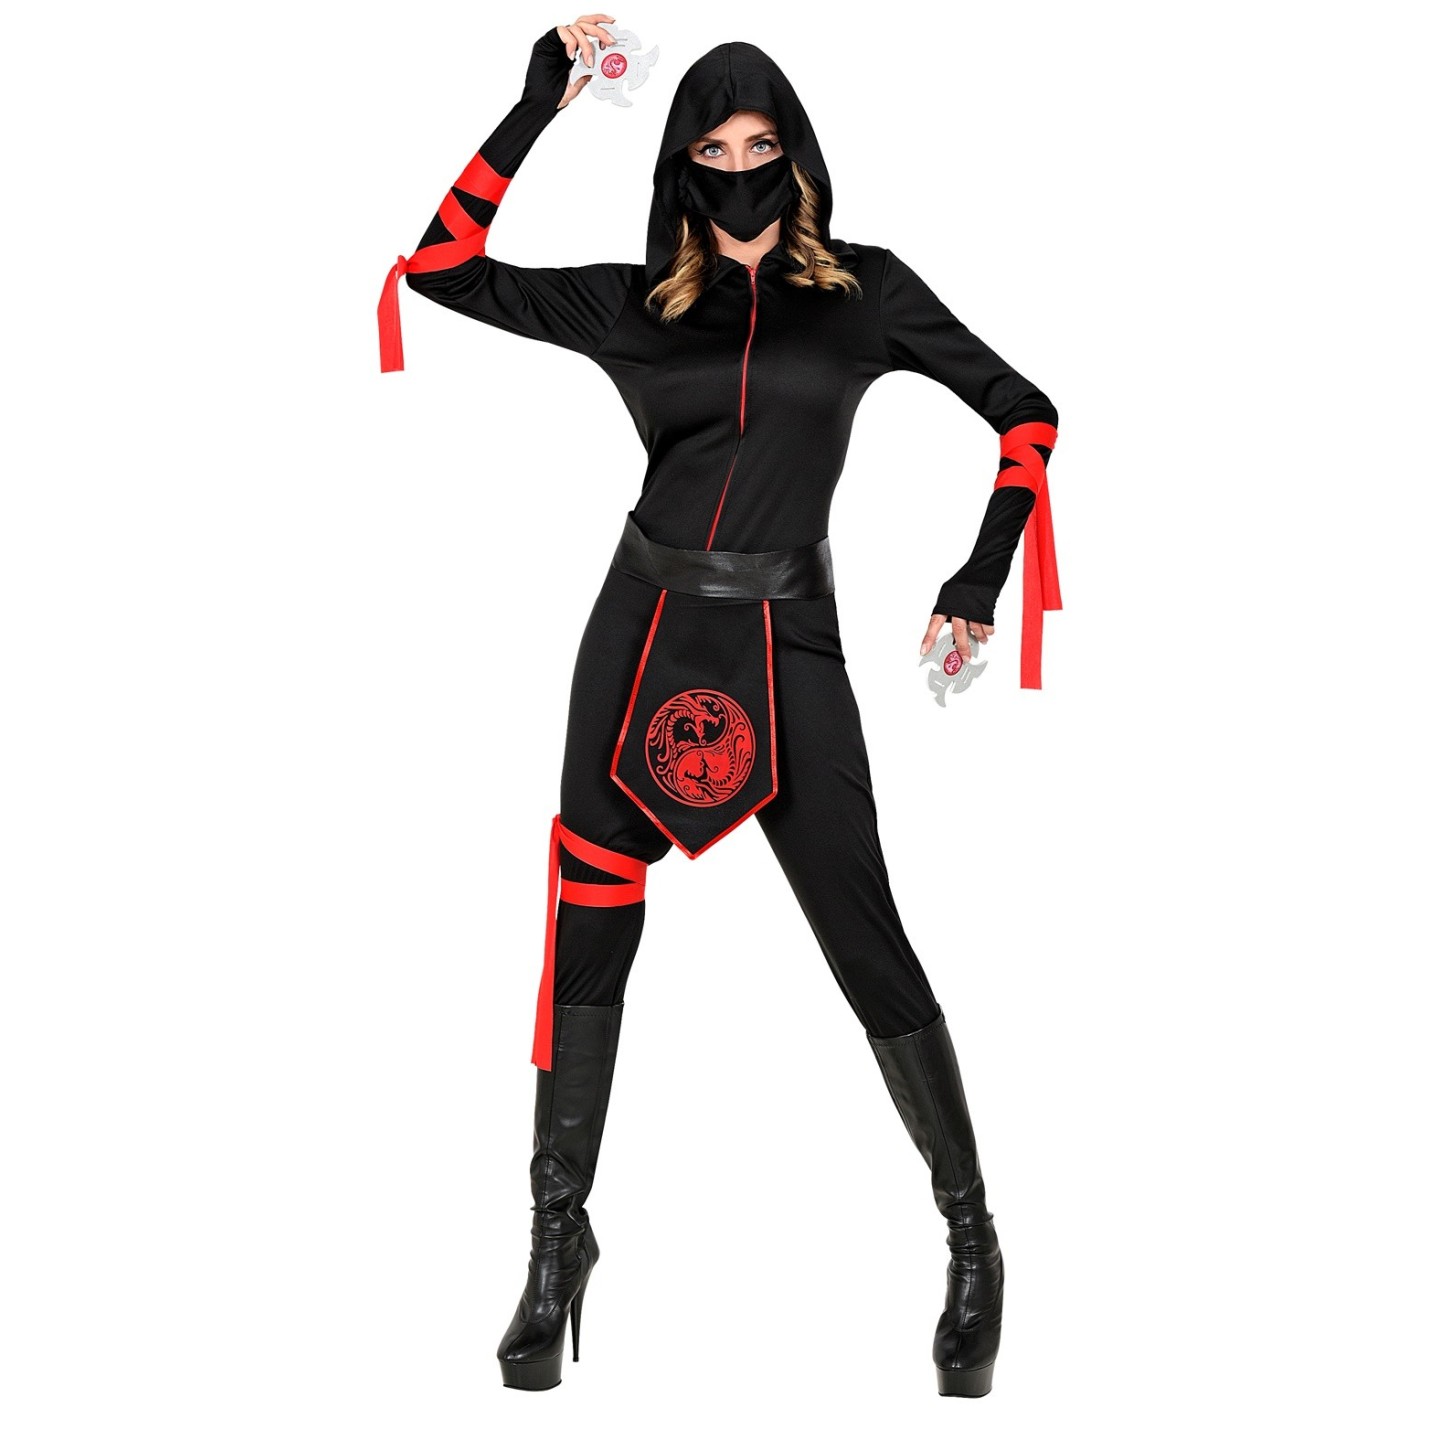 Ritmisch bijgeloof Reusachtig Ninja kostuum dames zwart rood | Jokershop.be - Verkleedwinkel